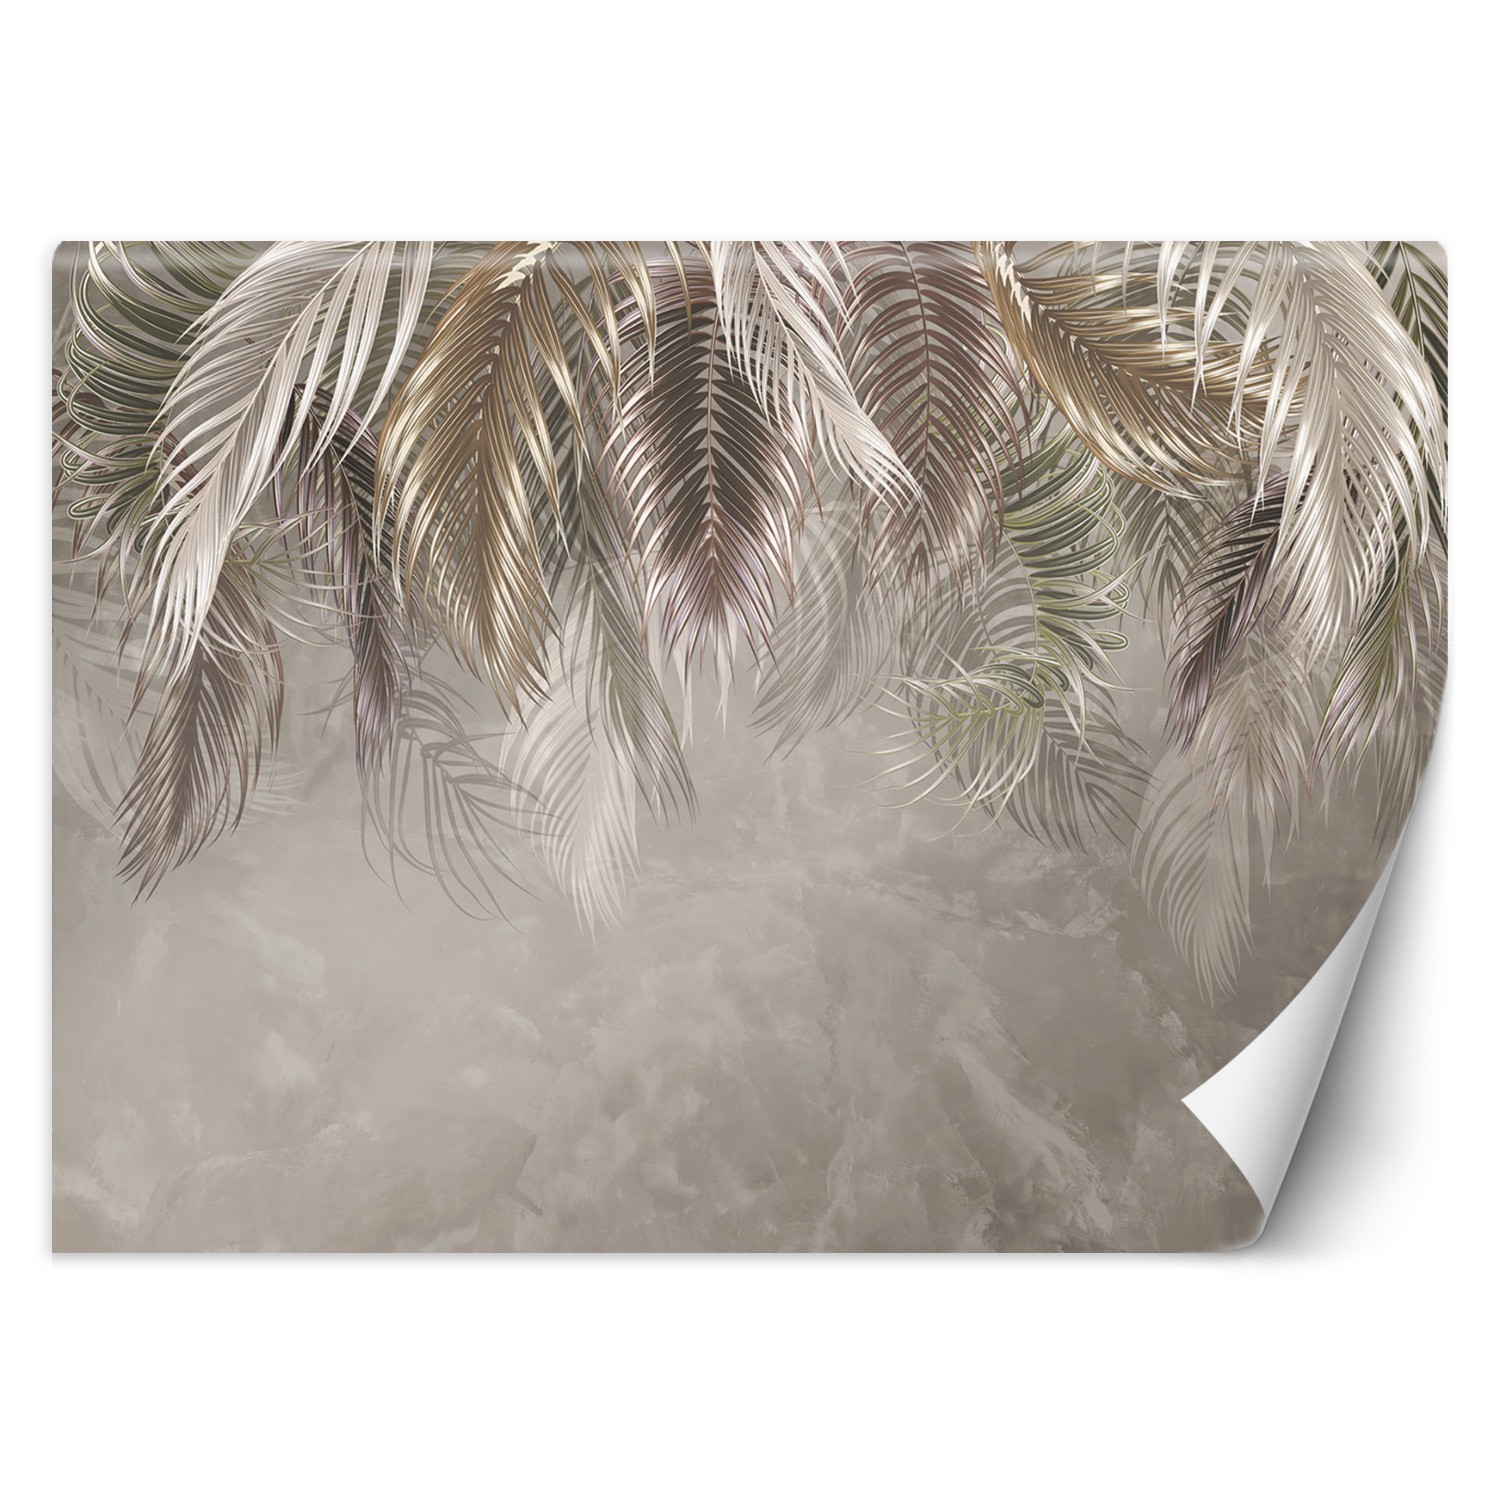 Trend24 – Behang – Palmbladeren 3D – Behangpapier – Fotobehang 3D – Behang Woonkamer – 200x140x2 cm – Incl. behanglijm